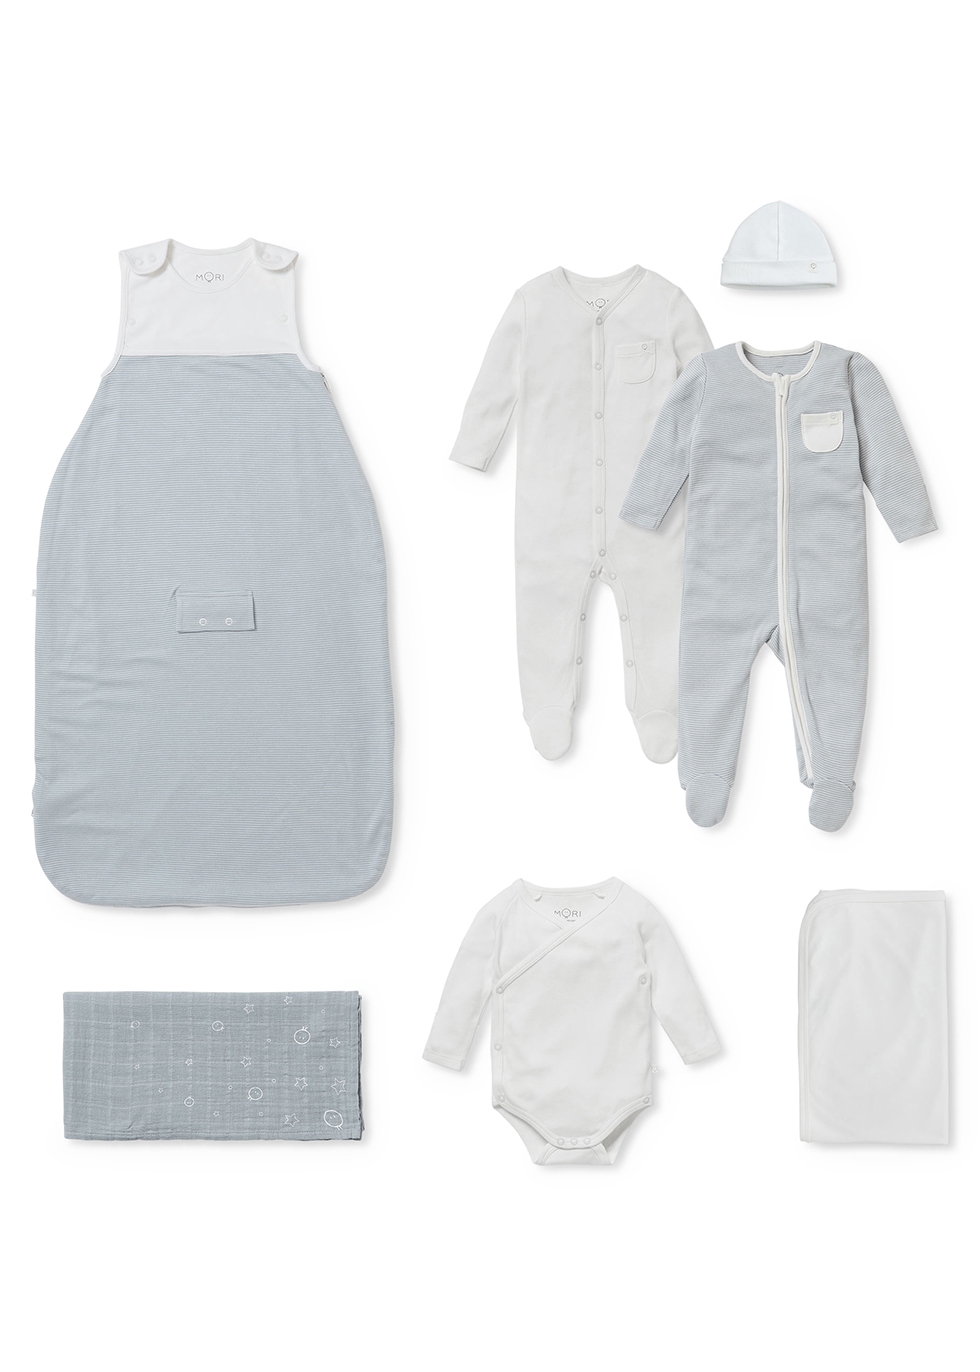 Mori Babies' My First Summer Striped Jersey Sleep Set (6 Months)